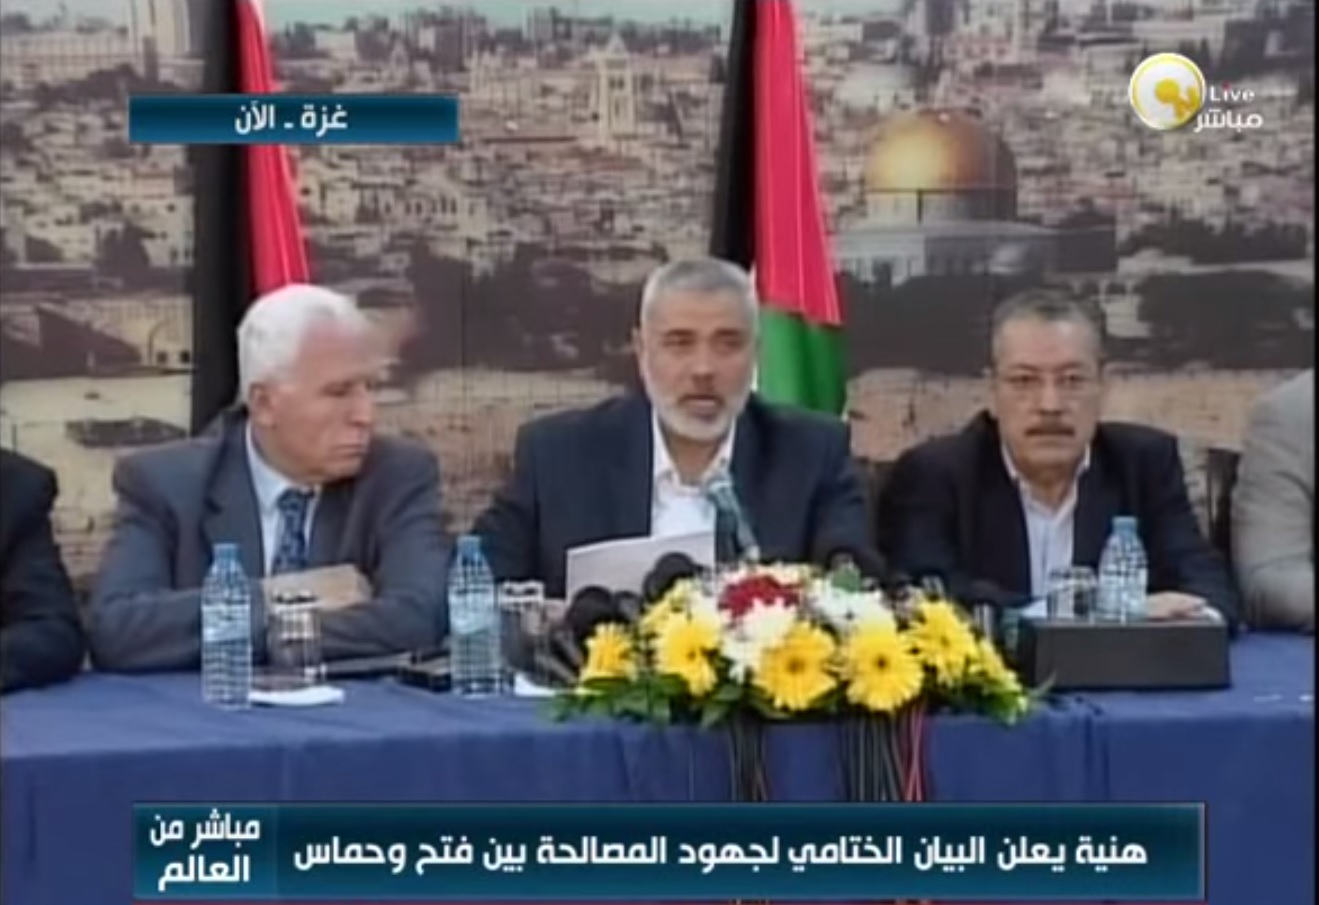 הסכם הפיוס האחרון בין פתח לחמאס (צילום מסך: יוטיוב)